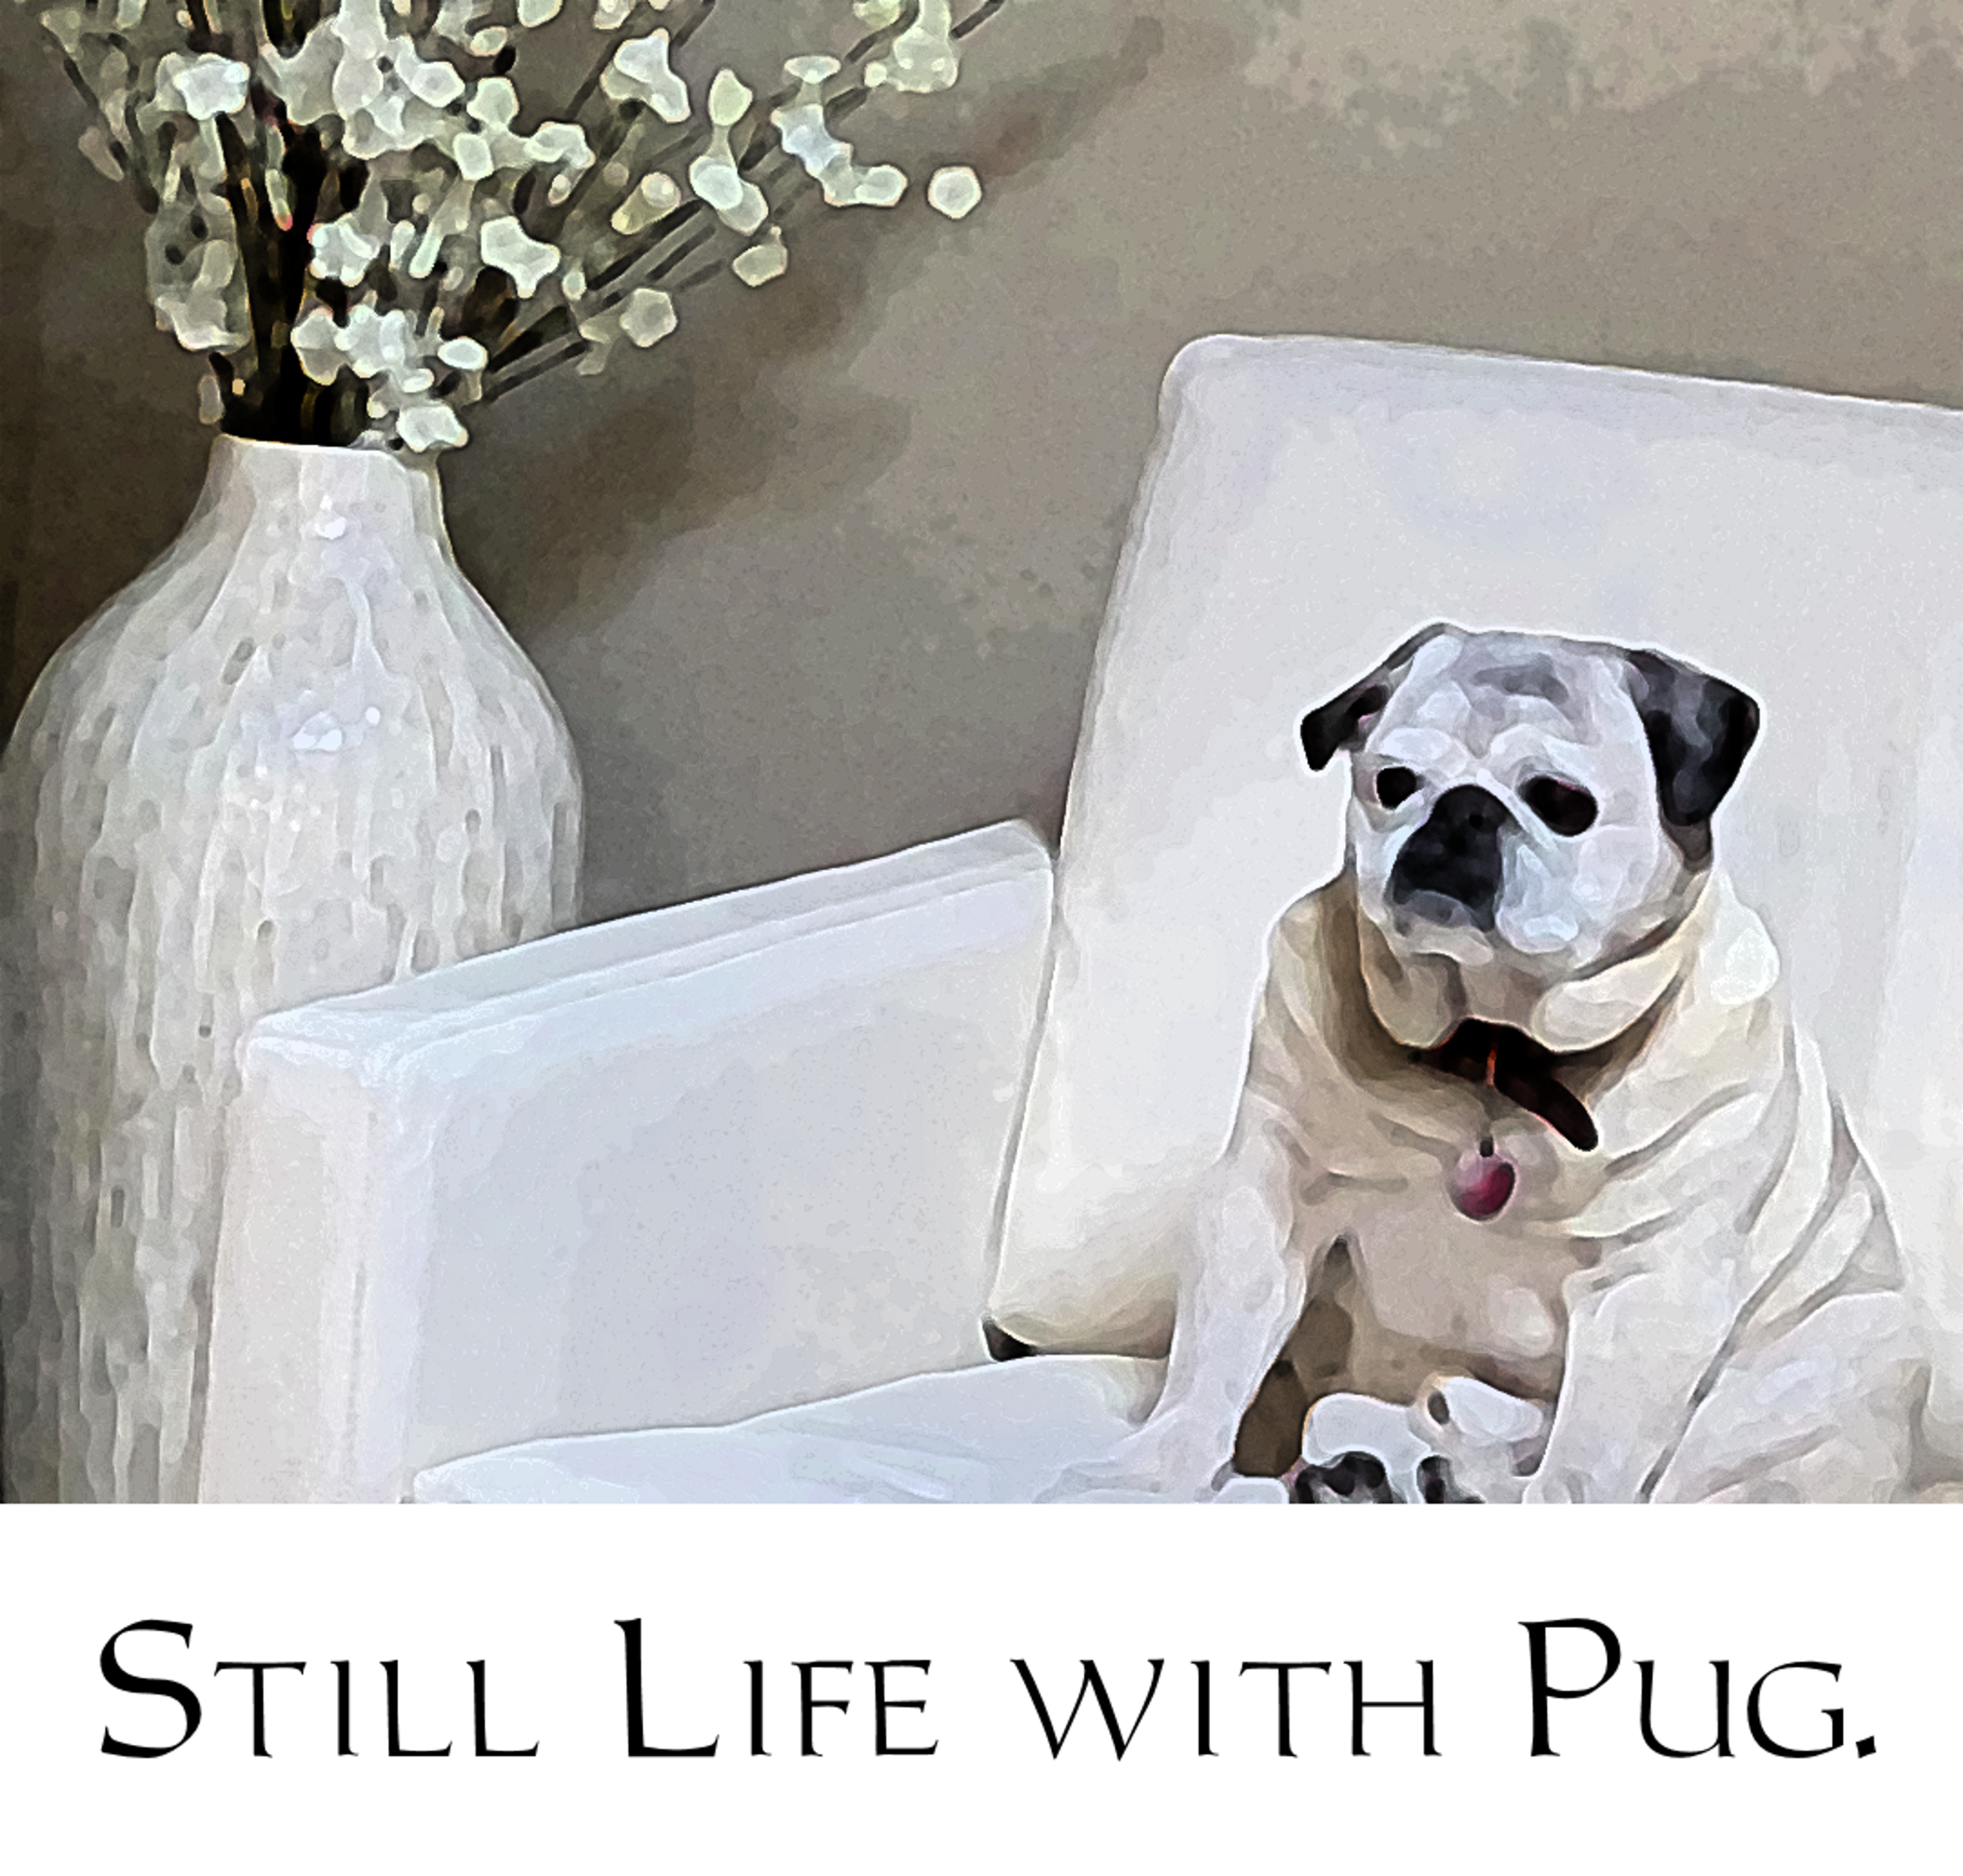 Still life with pug.